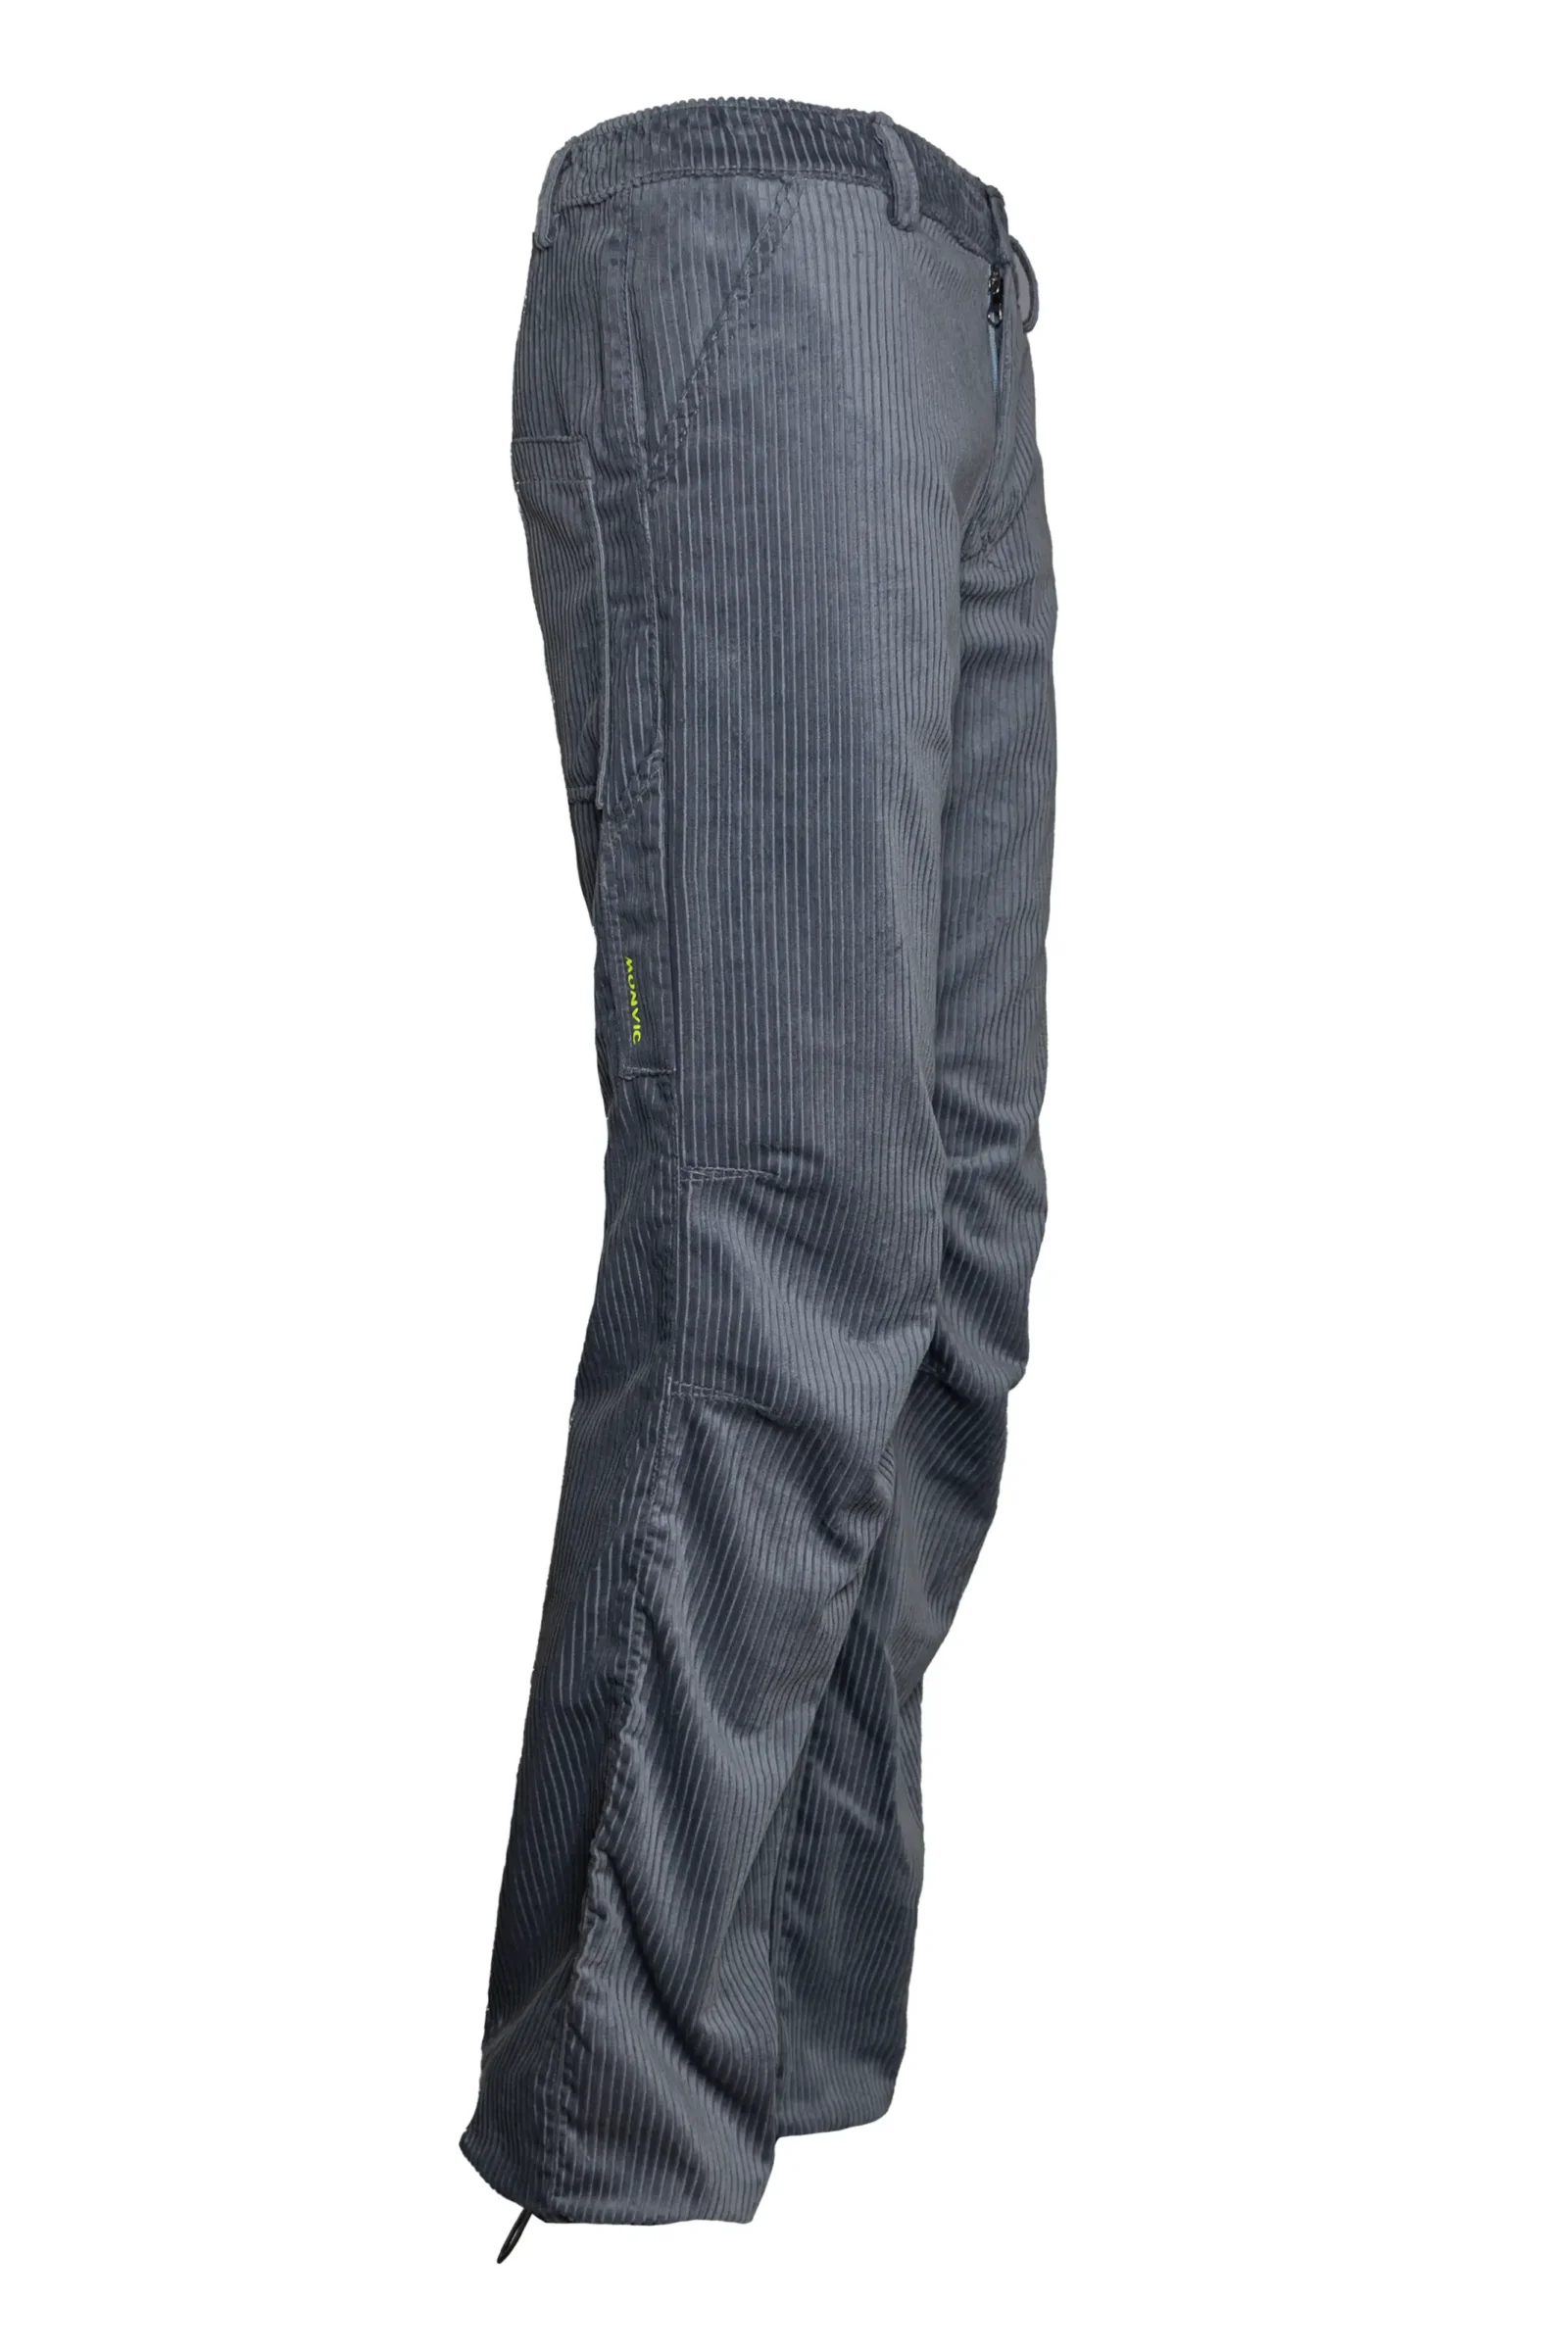 Pantalon homme - velours côtelé moyen - gris - GRILLO MONVIC